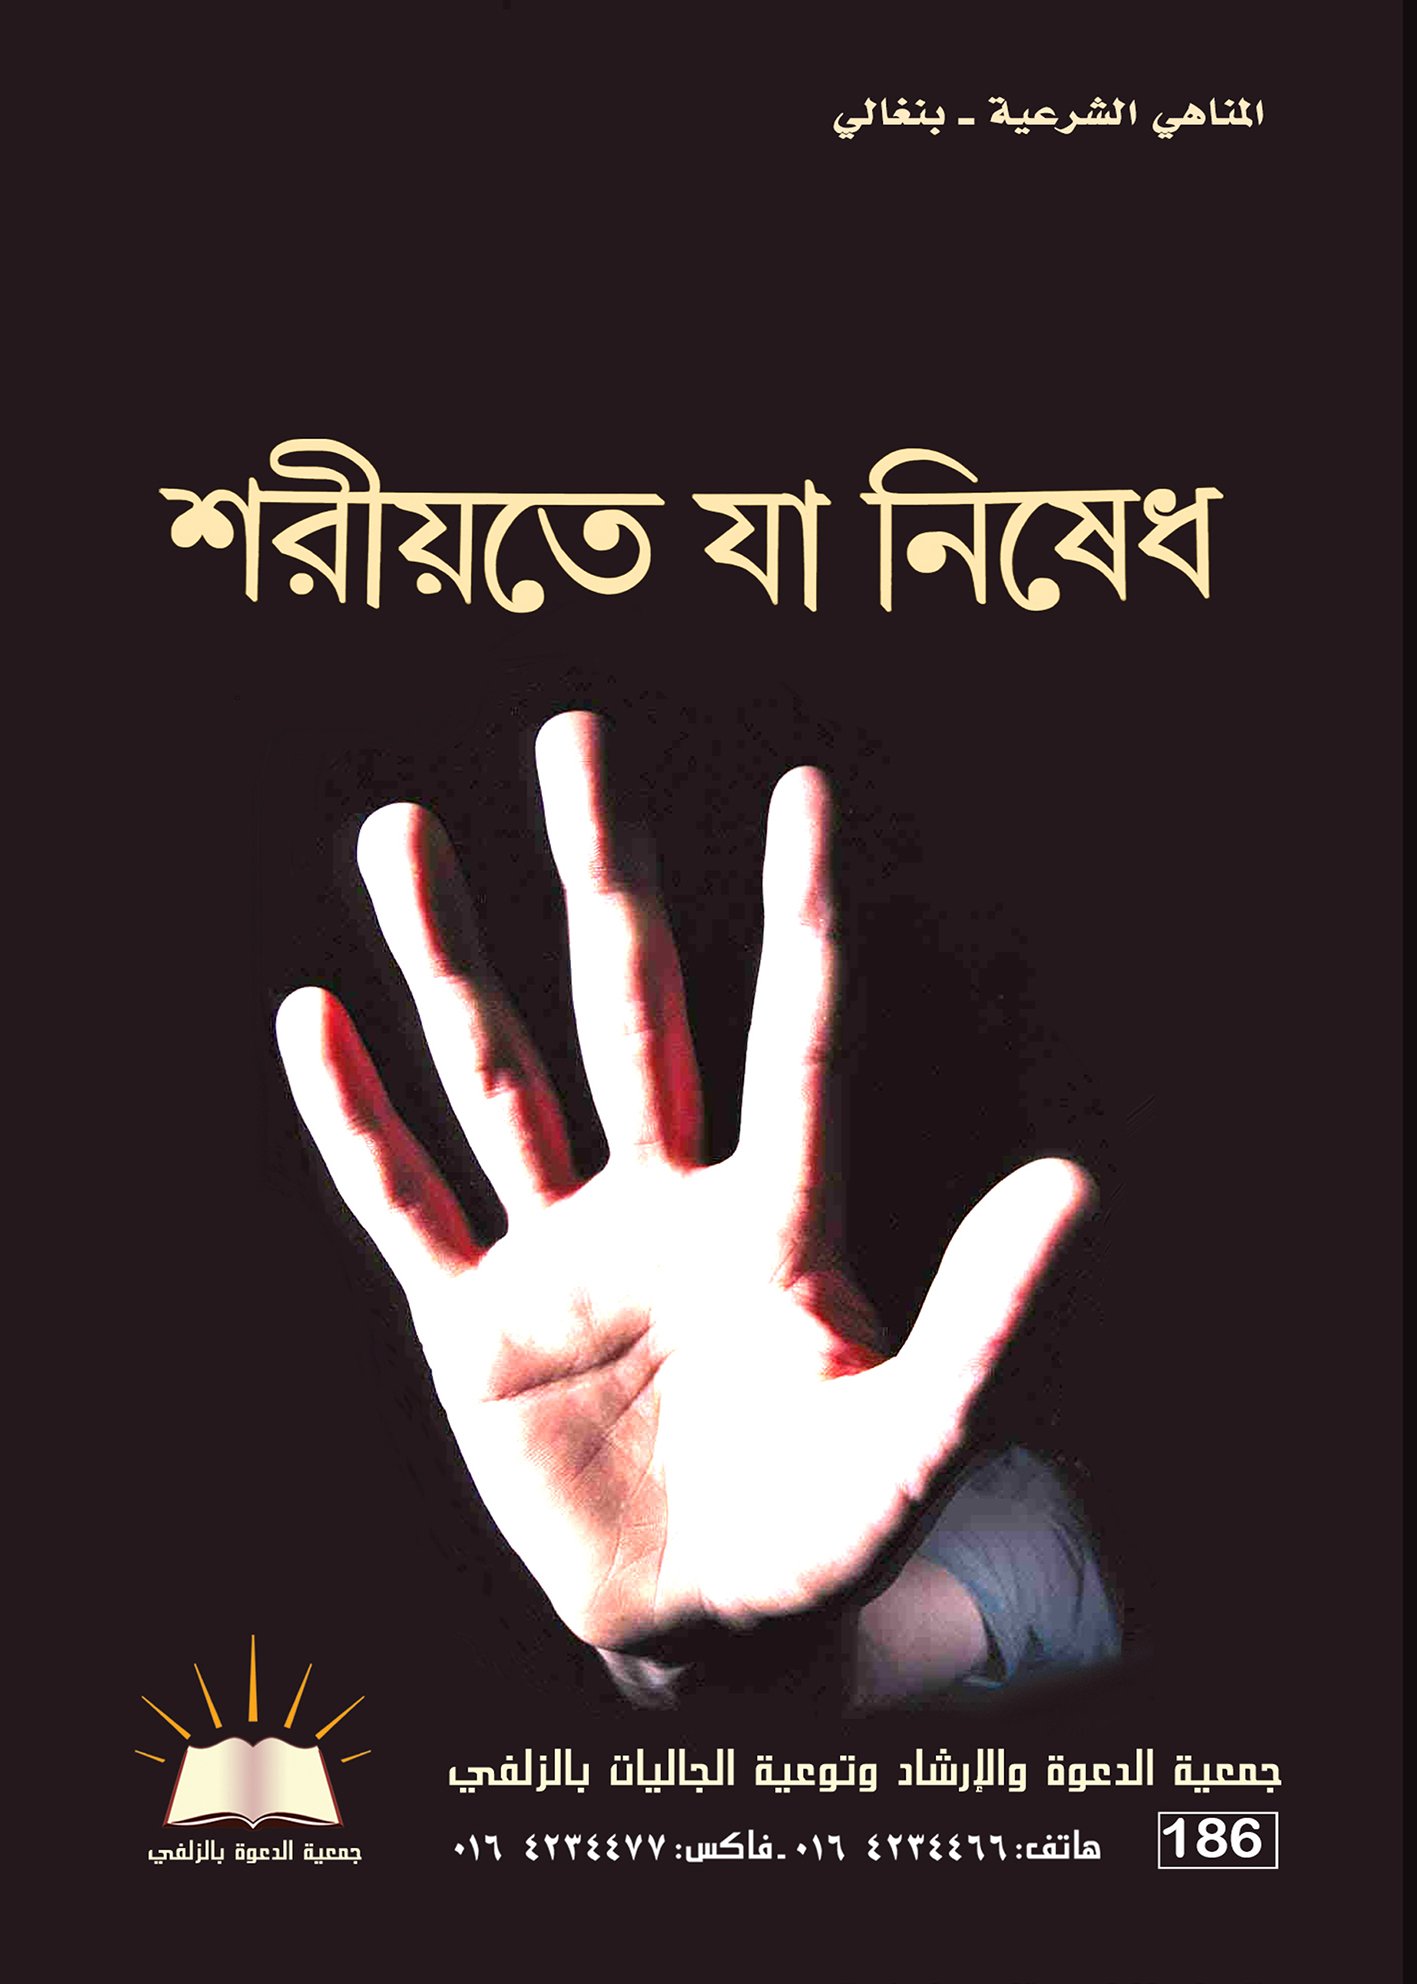 مناهي شرعية - بنغالي